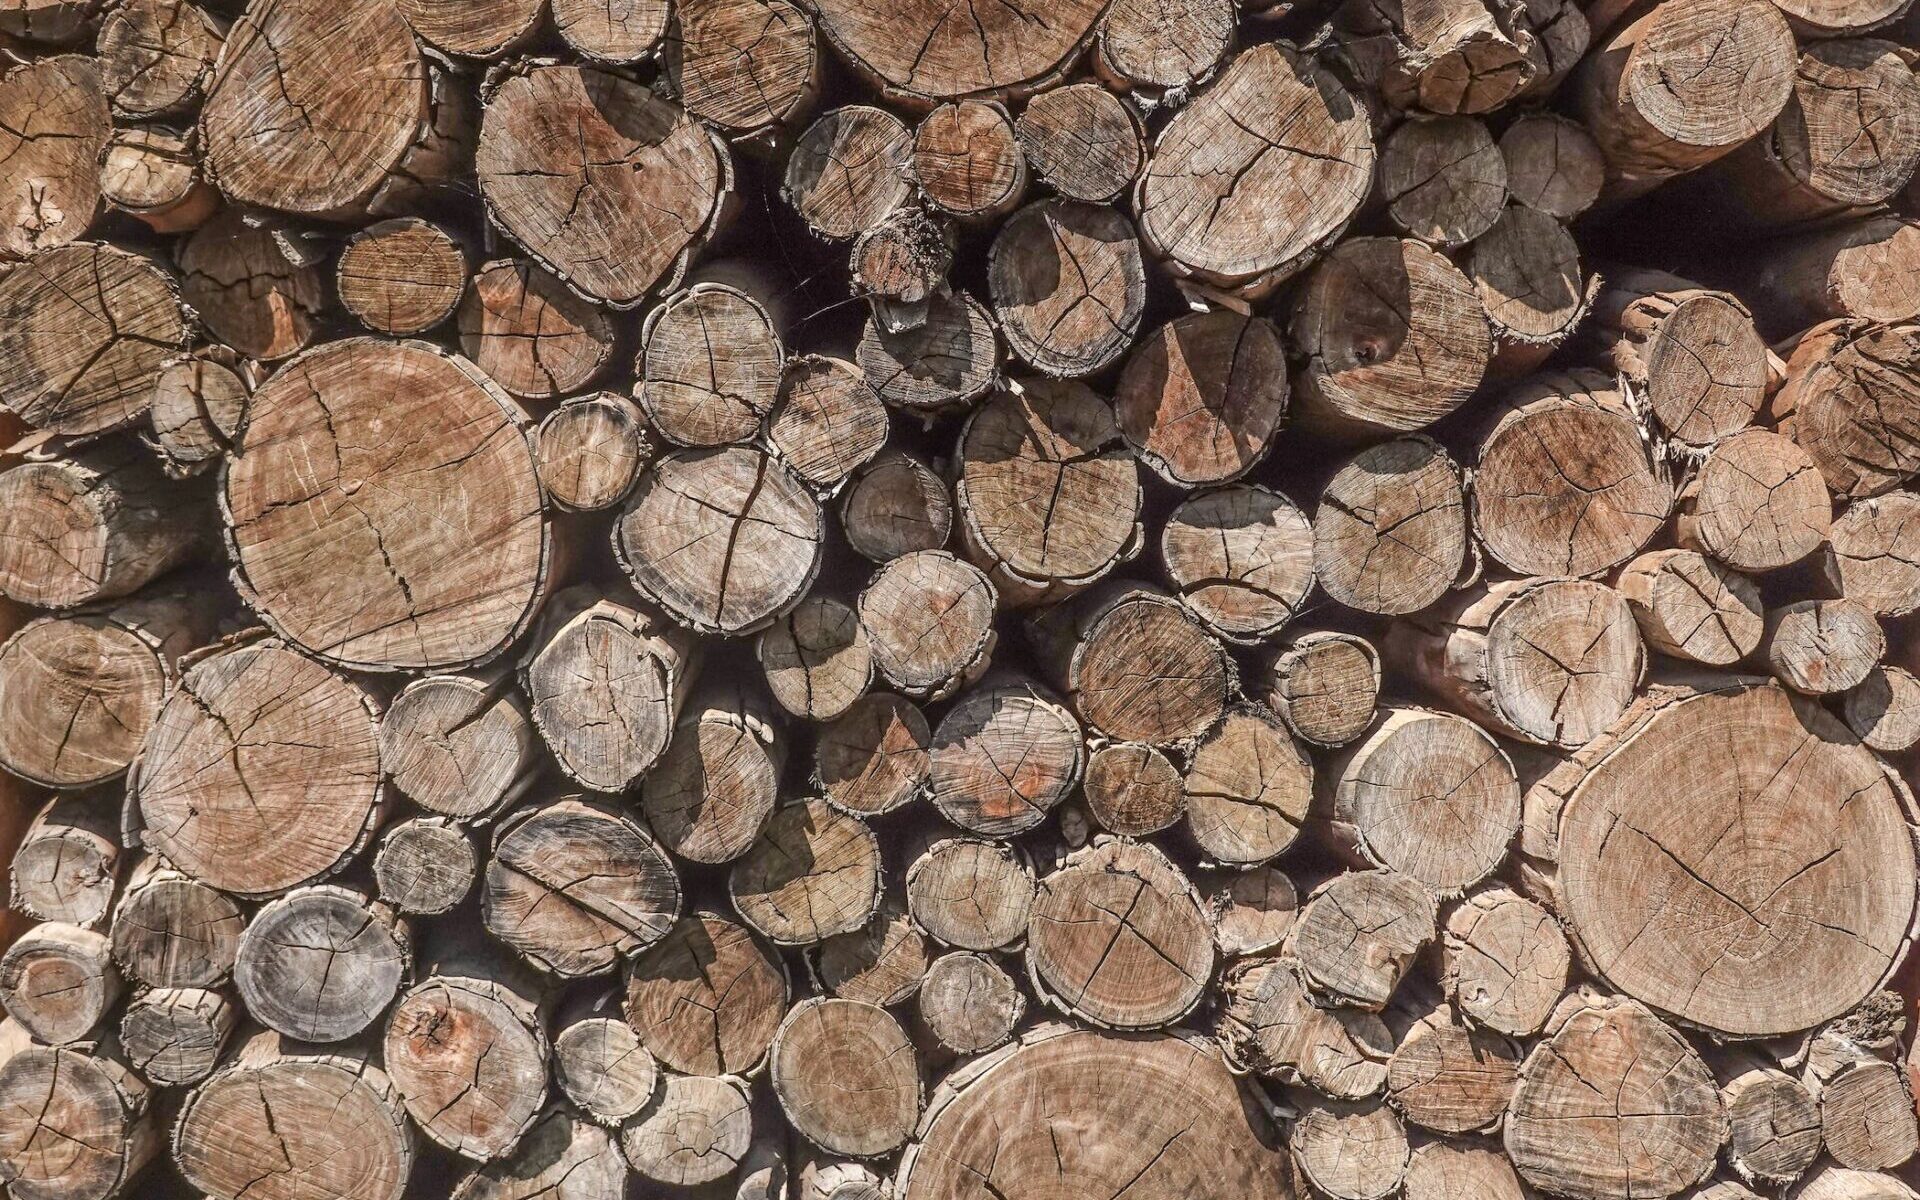 Lubin: Mężczyzna wyciął z lasu ponad 100 drzew. Straty wyceniono na 70 tysięcy złotych /fot. pexels